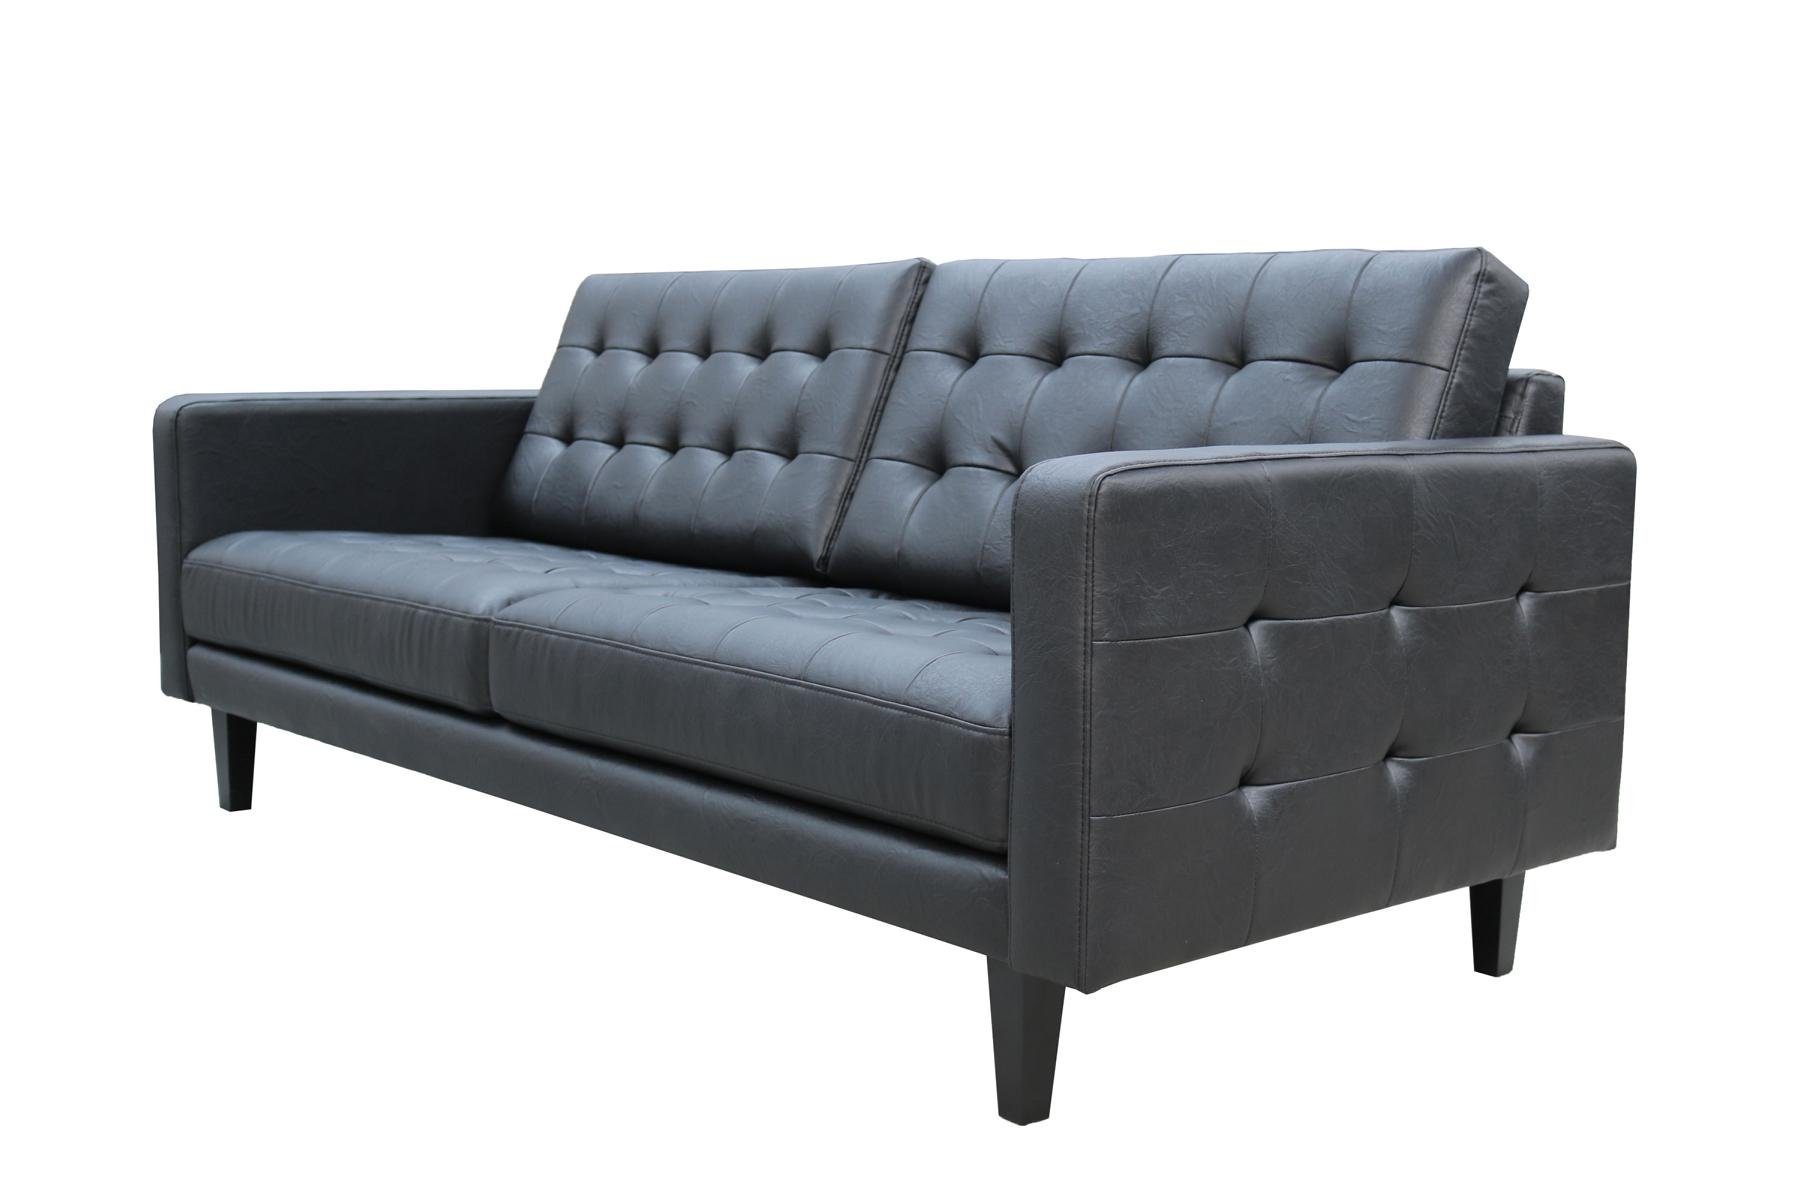 JVmoebel Sofa in Chesterfield Made Couch Polster Polstermöbel Neu, 3+1 Sitzer Europe Schwarze